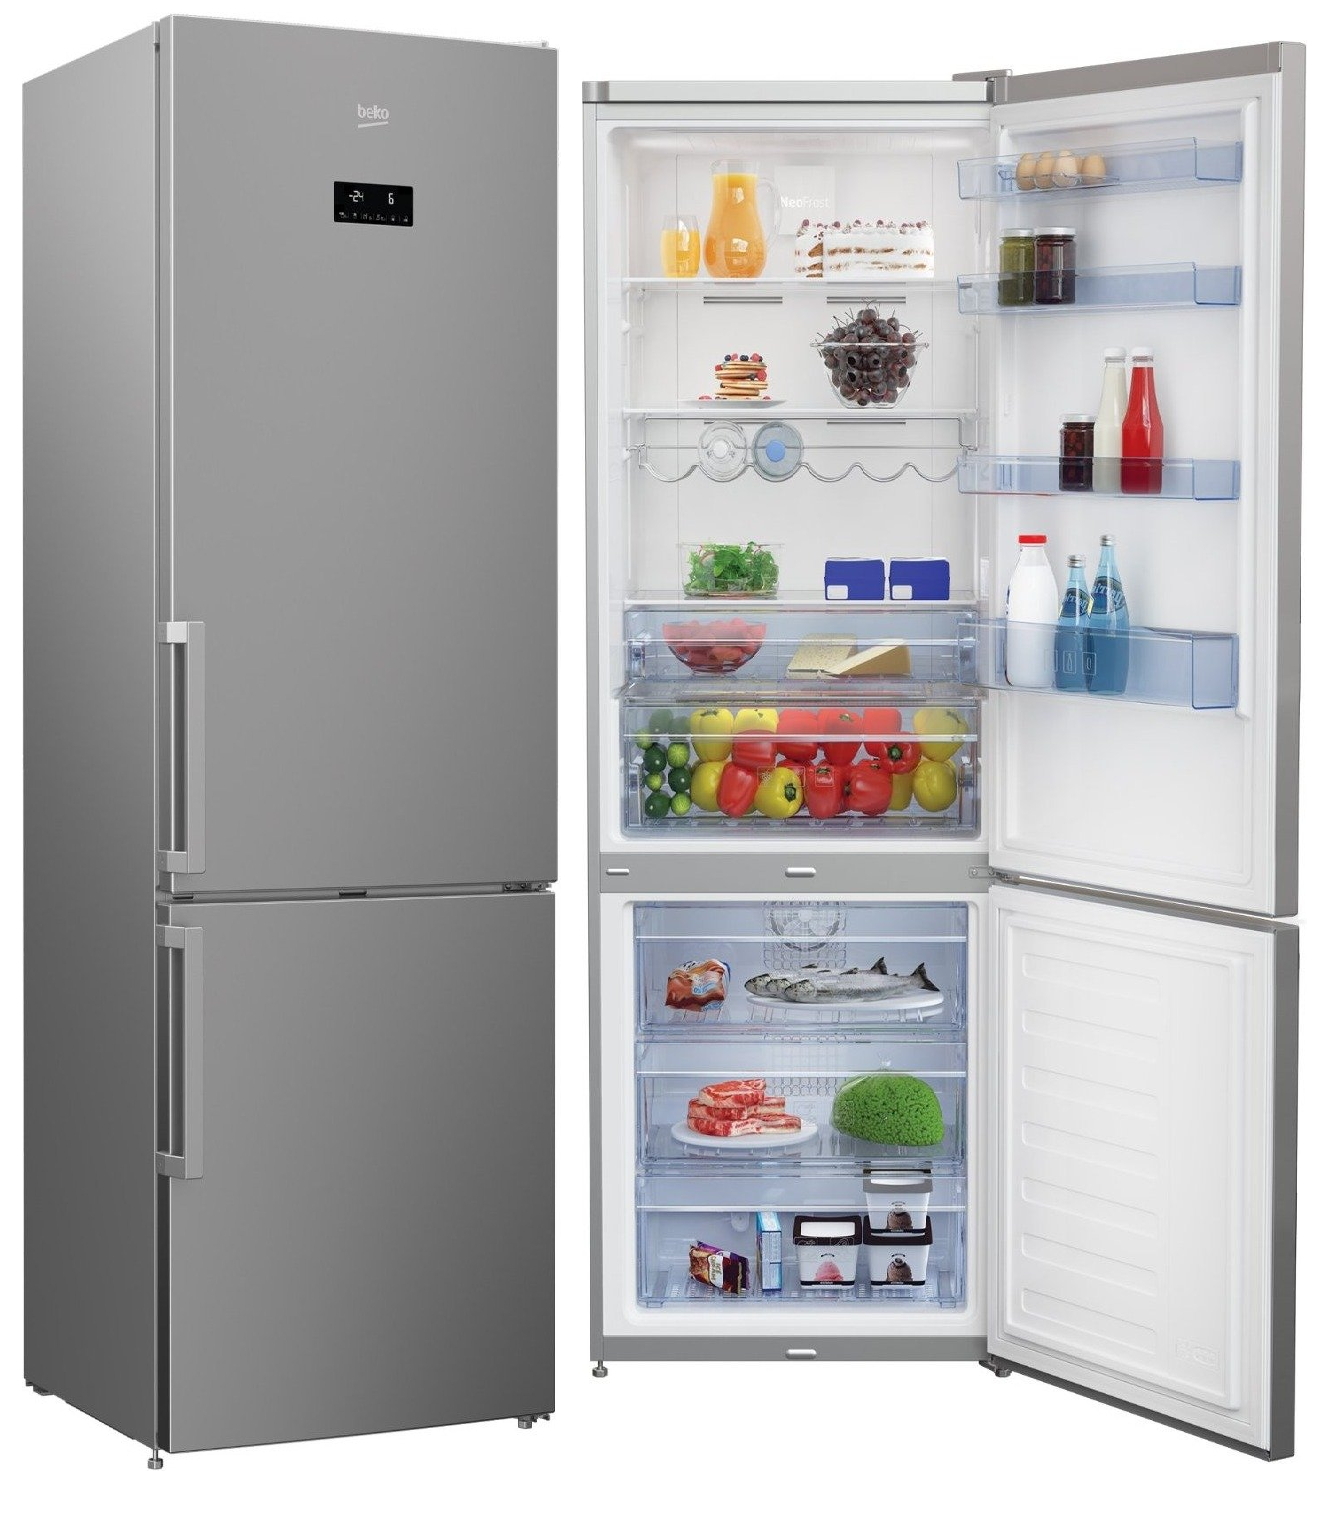 Официальные производители холодильников. Холодильник БЕКО в3rcnk402hx. Холодильник-морозильник, марки БЕКО модель cnkl7321ecow. Холодильник Beko CNKL 7321 ec0s. Холодильник БЕКО rcnk400e30zw.